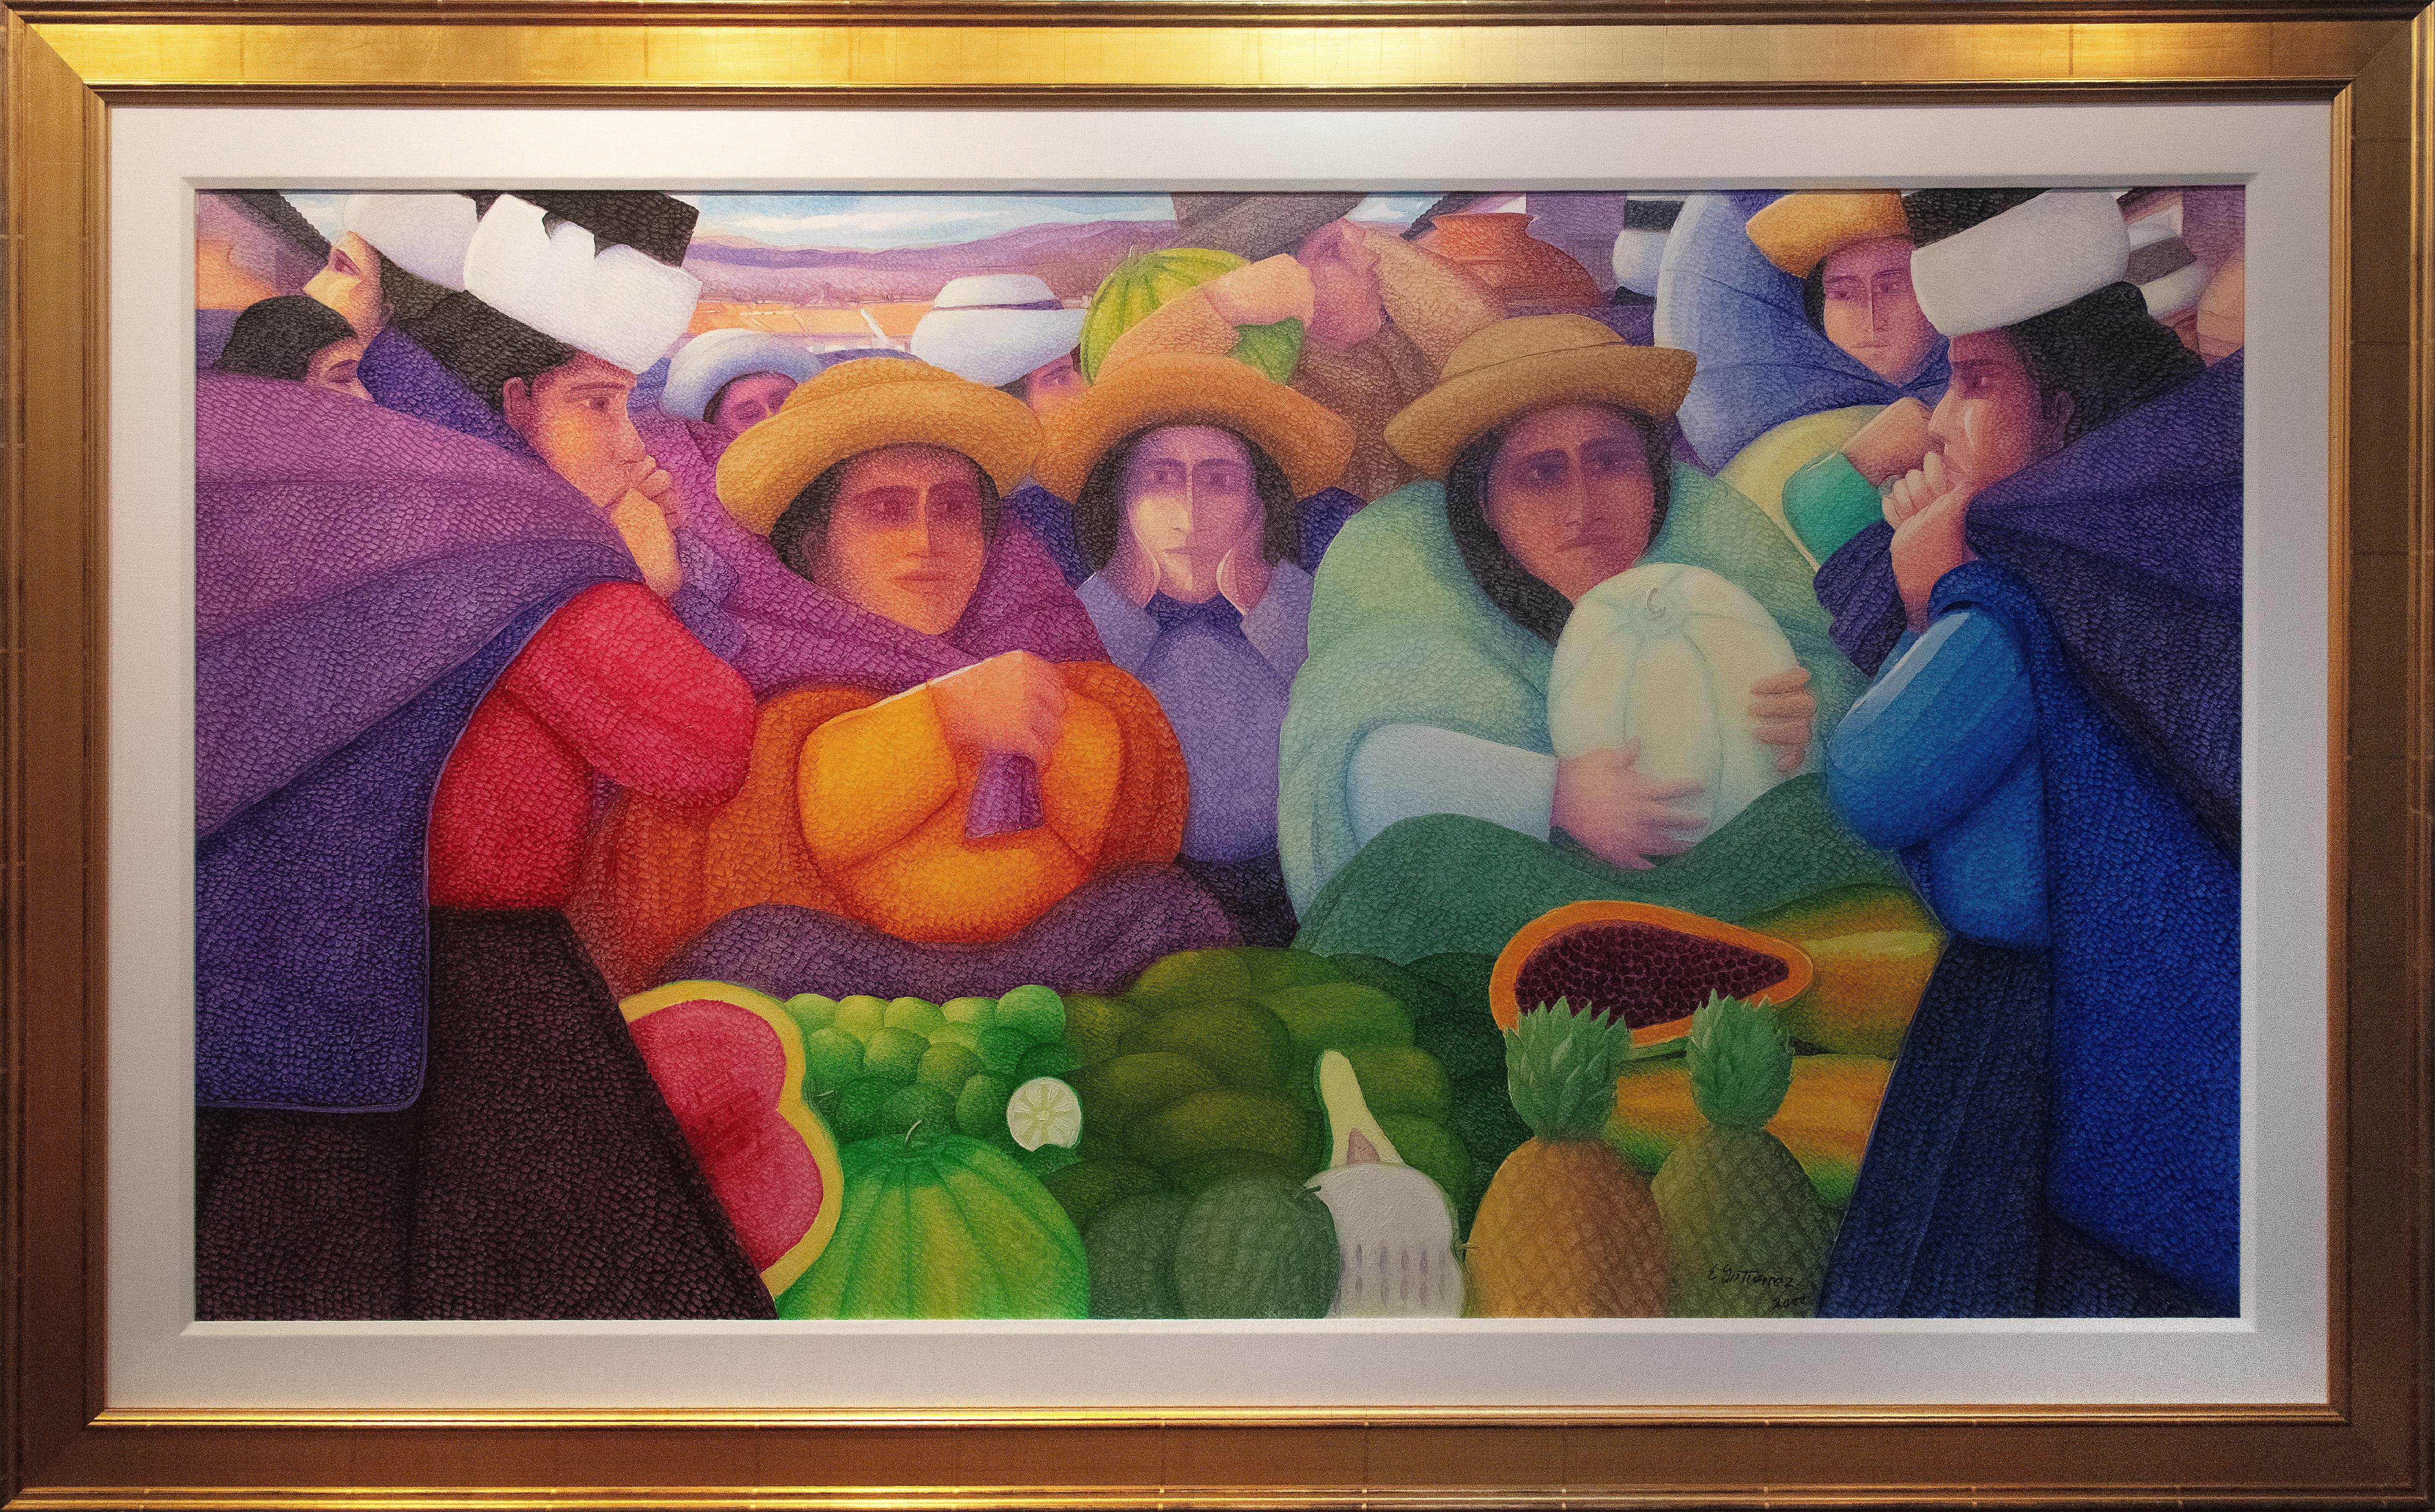 Obst Lebensmittel Latino Weibliche Figuren Markt Modern Contemporary Bright Life Signiert – Painting von Ernesto Gutierrez (b.1941)